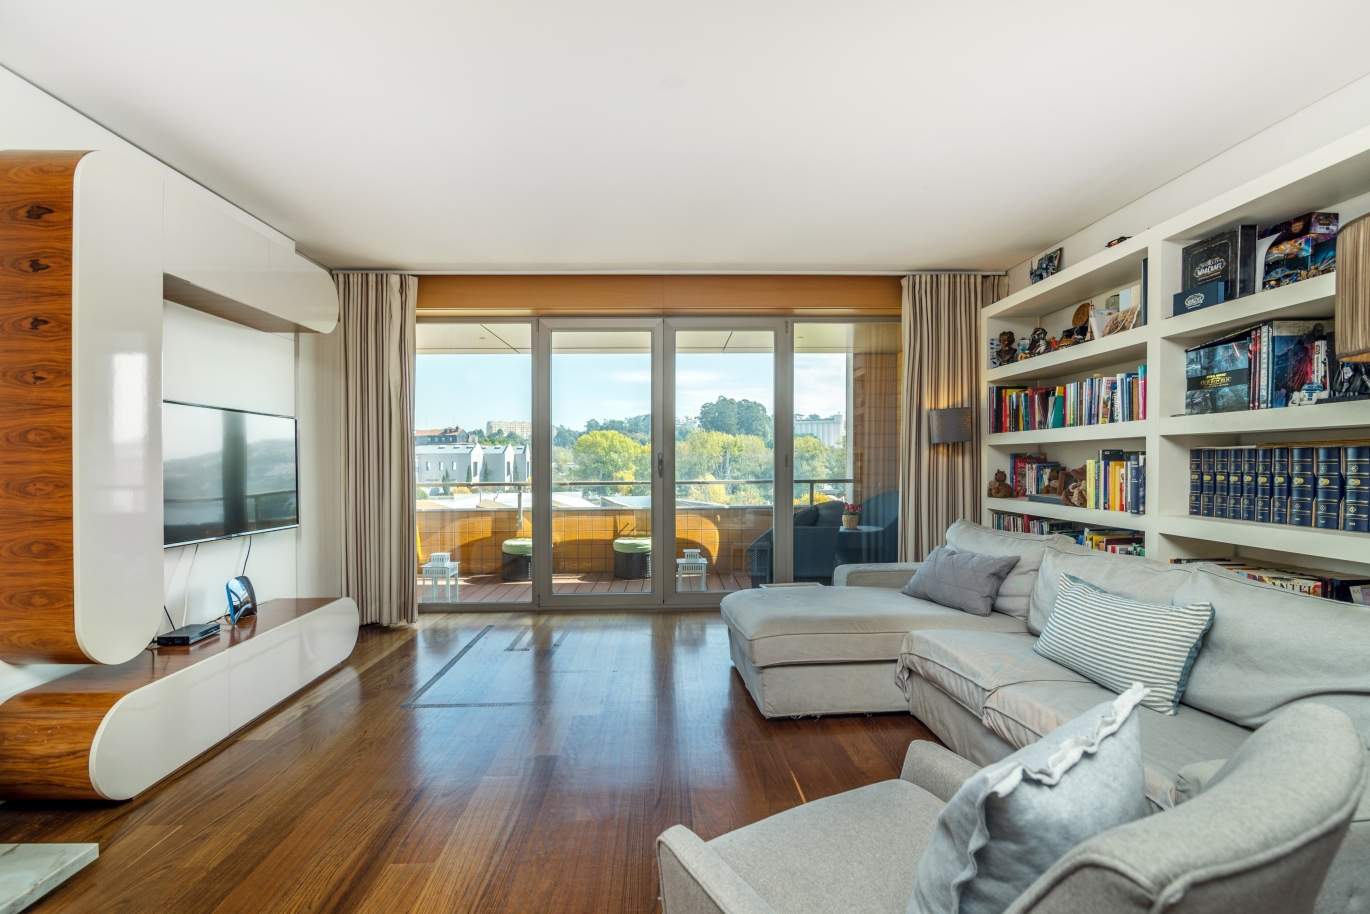 Sale apartment in private condominium w/ river views, Porto, Portugal_121030